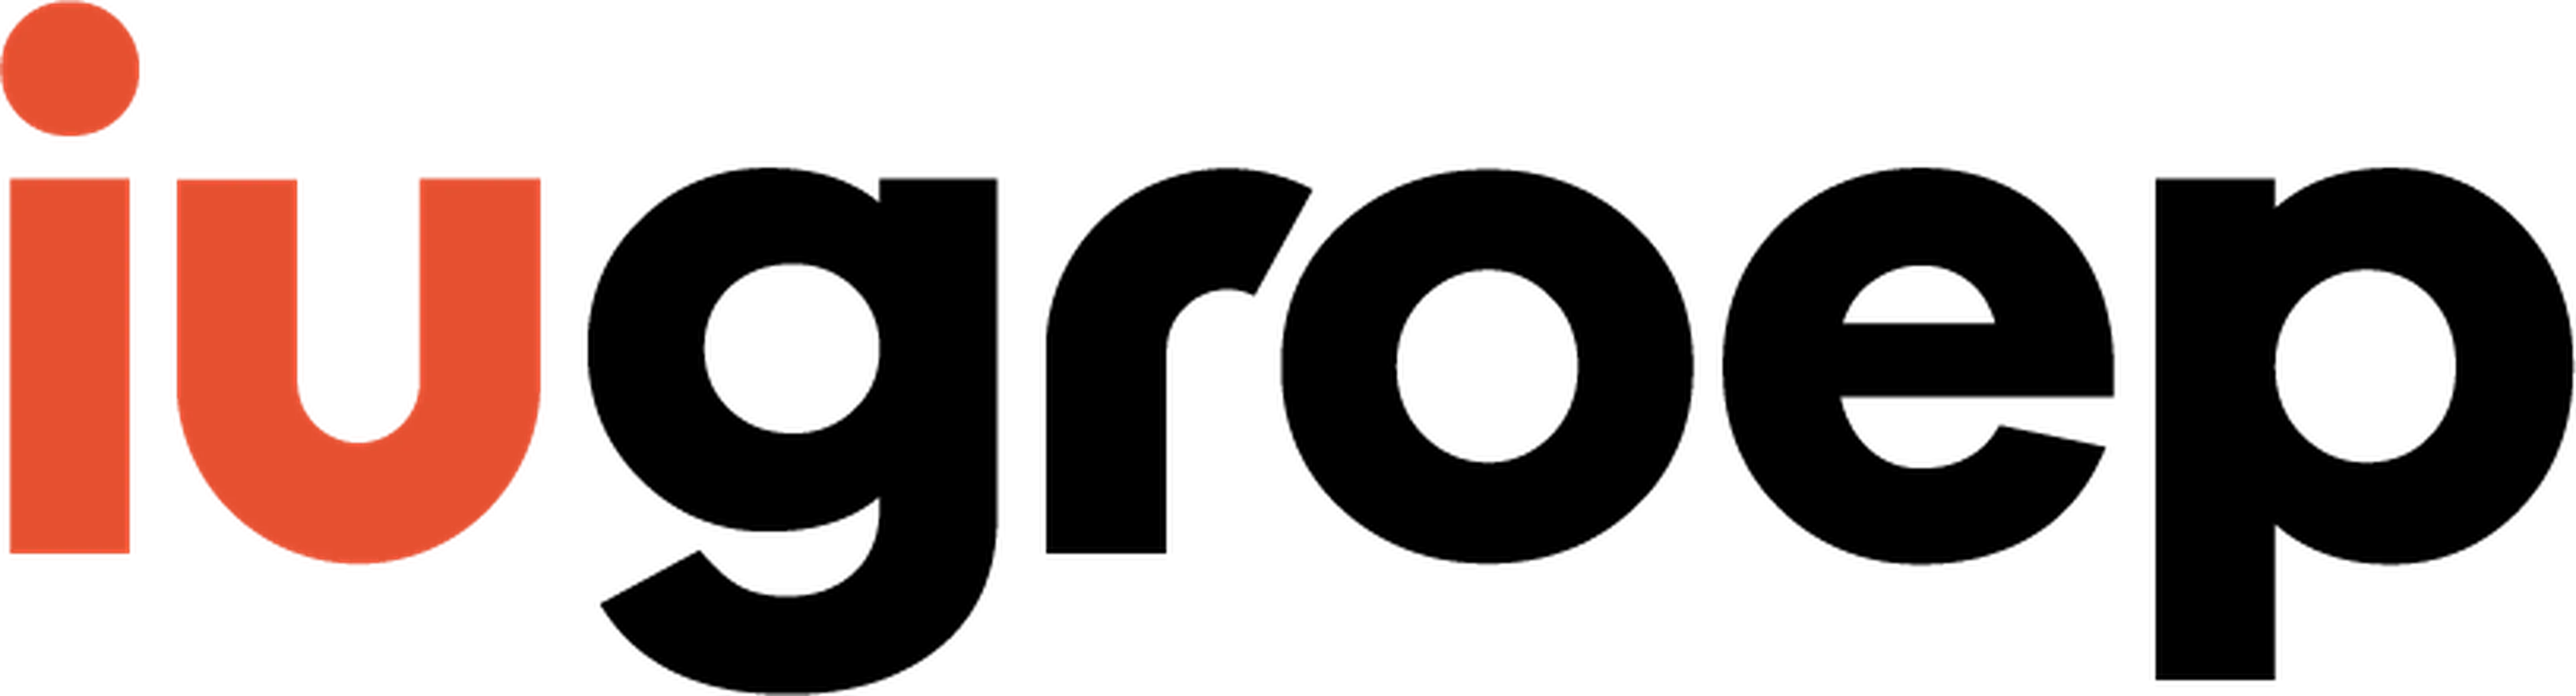 IU Groep logo